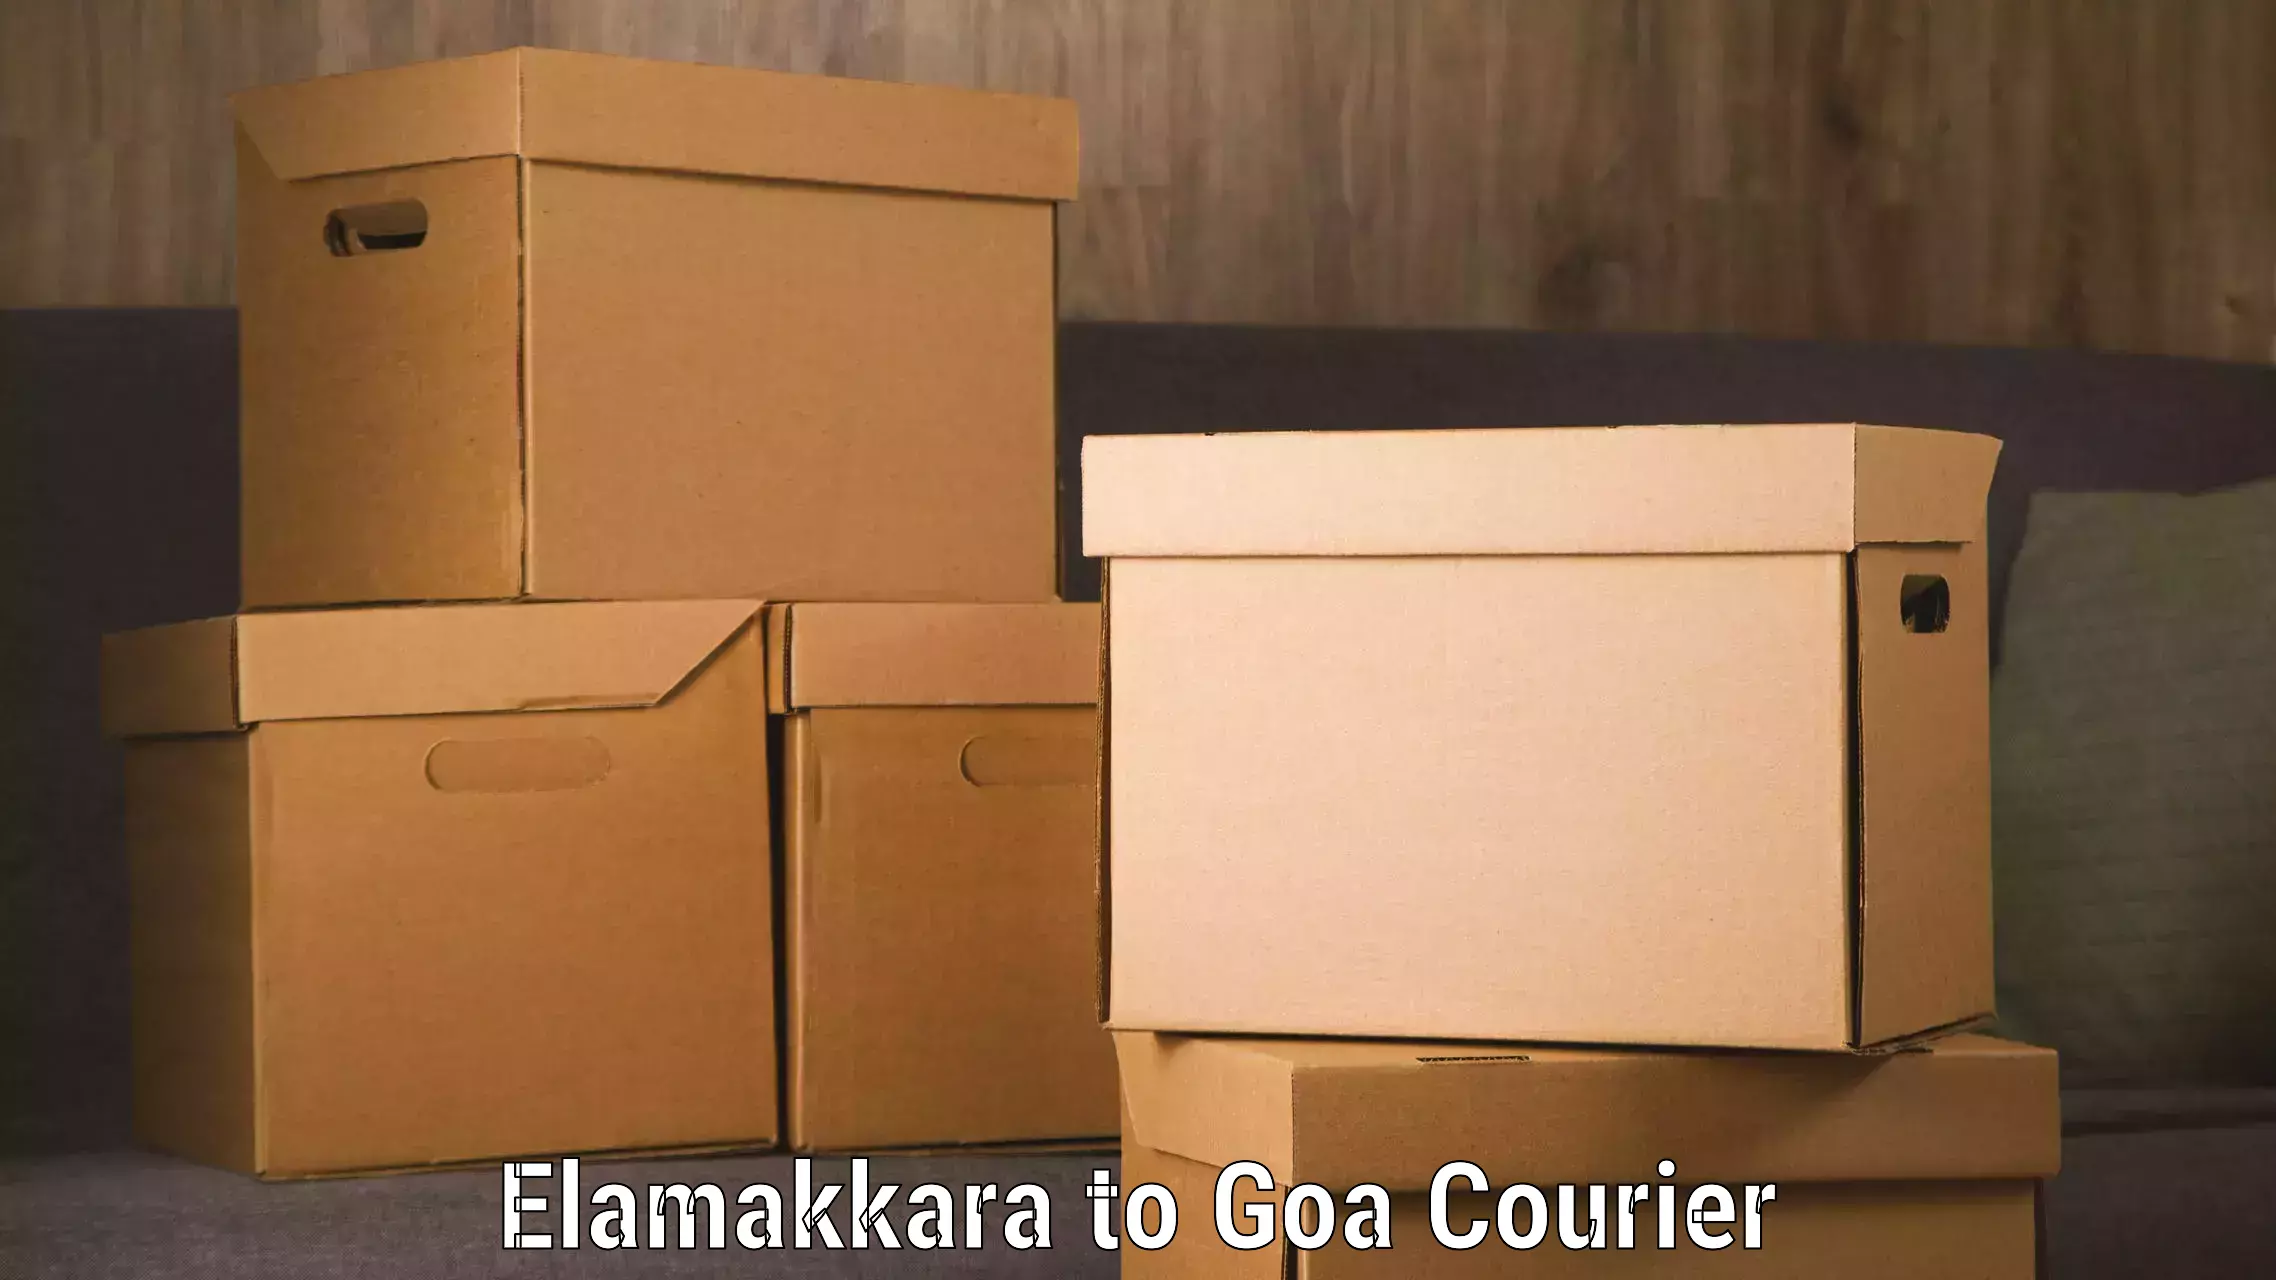 Efficient cargo handling in Elamakkara to Goa